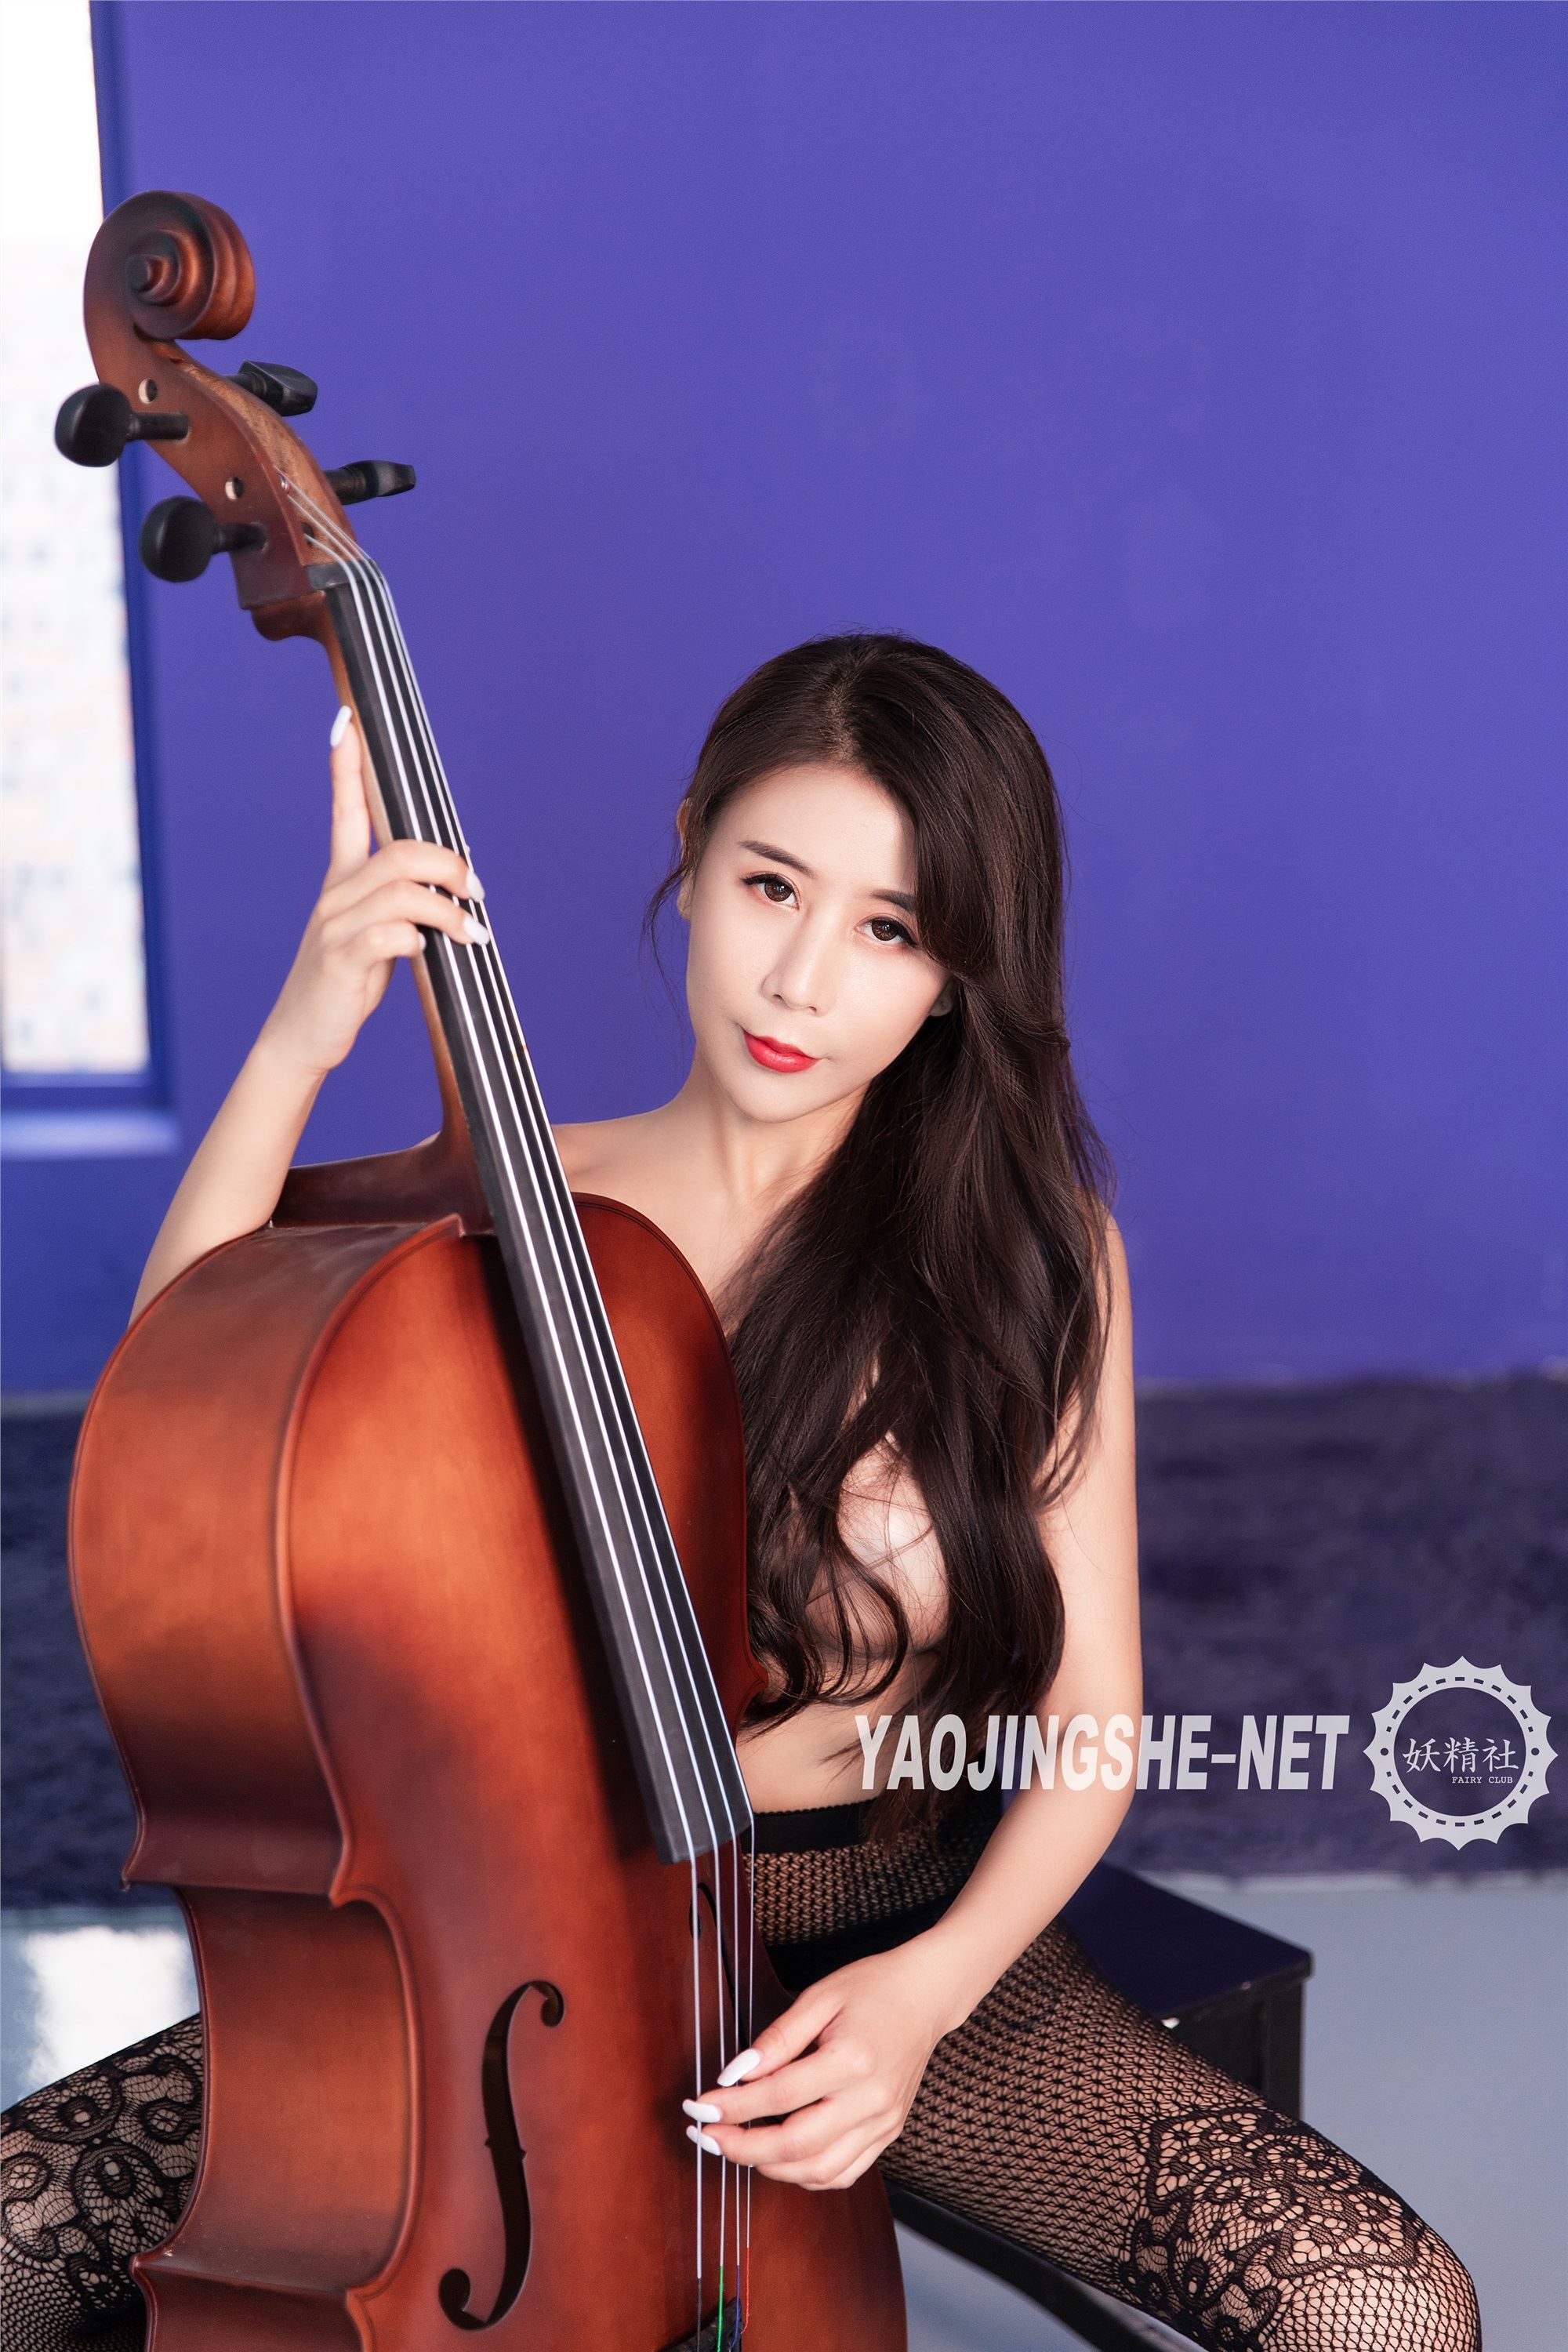 YAOJINGSHE 妖精社 V1901《紫嫣-美丝大提琴》